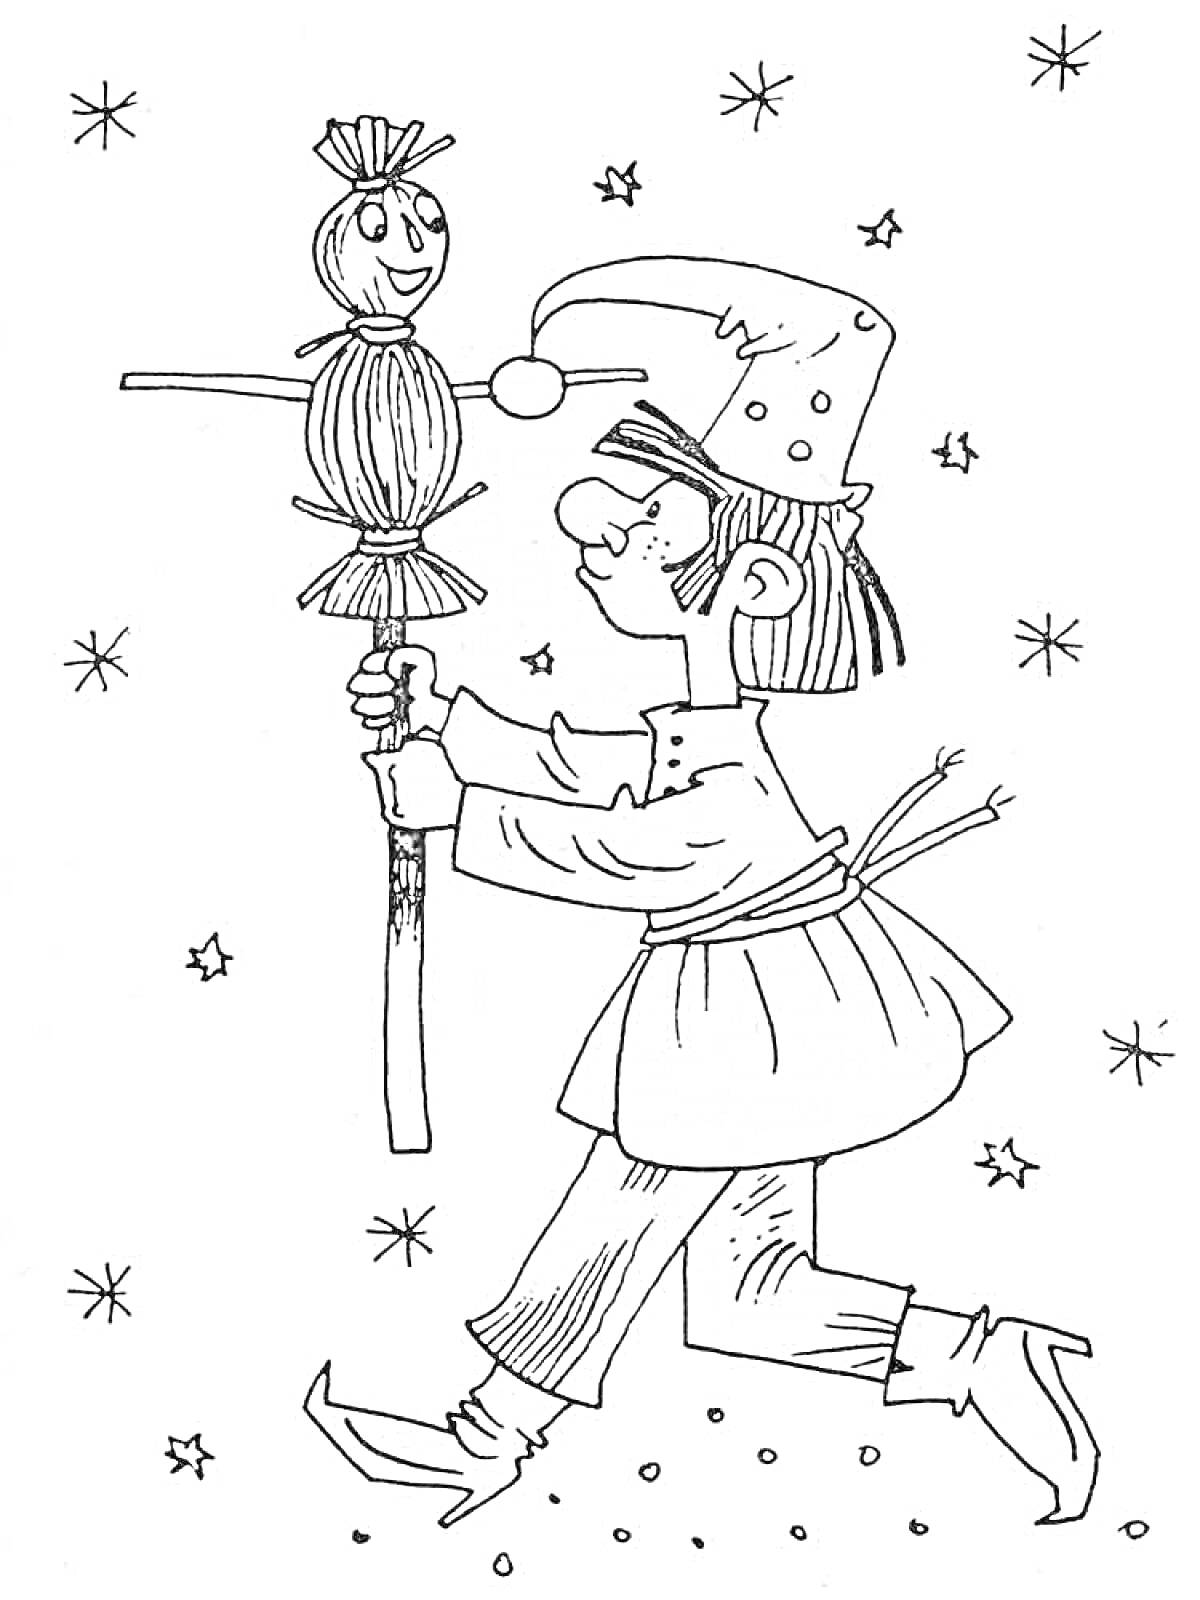 Человек в традиционной одежде с куклой Масленицы на палке, фон со звездами